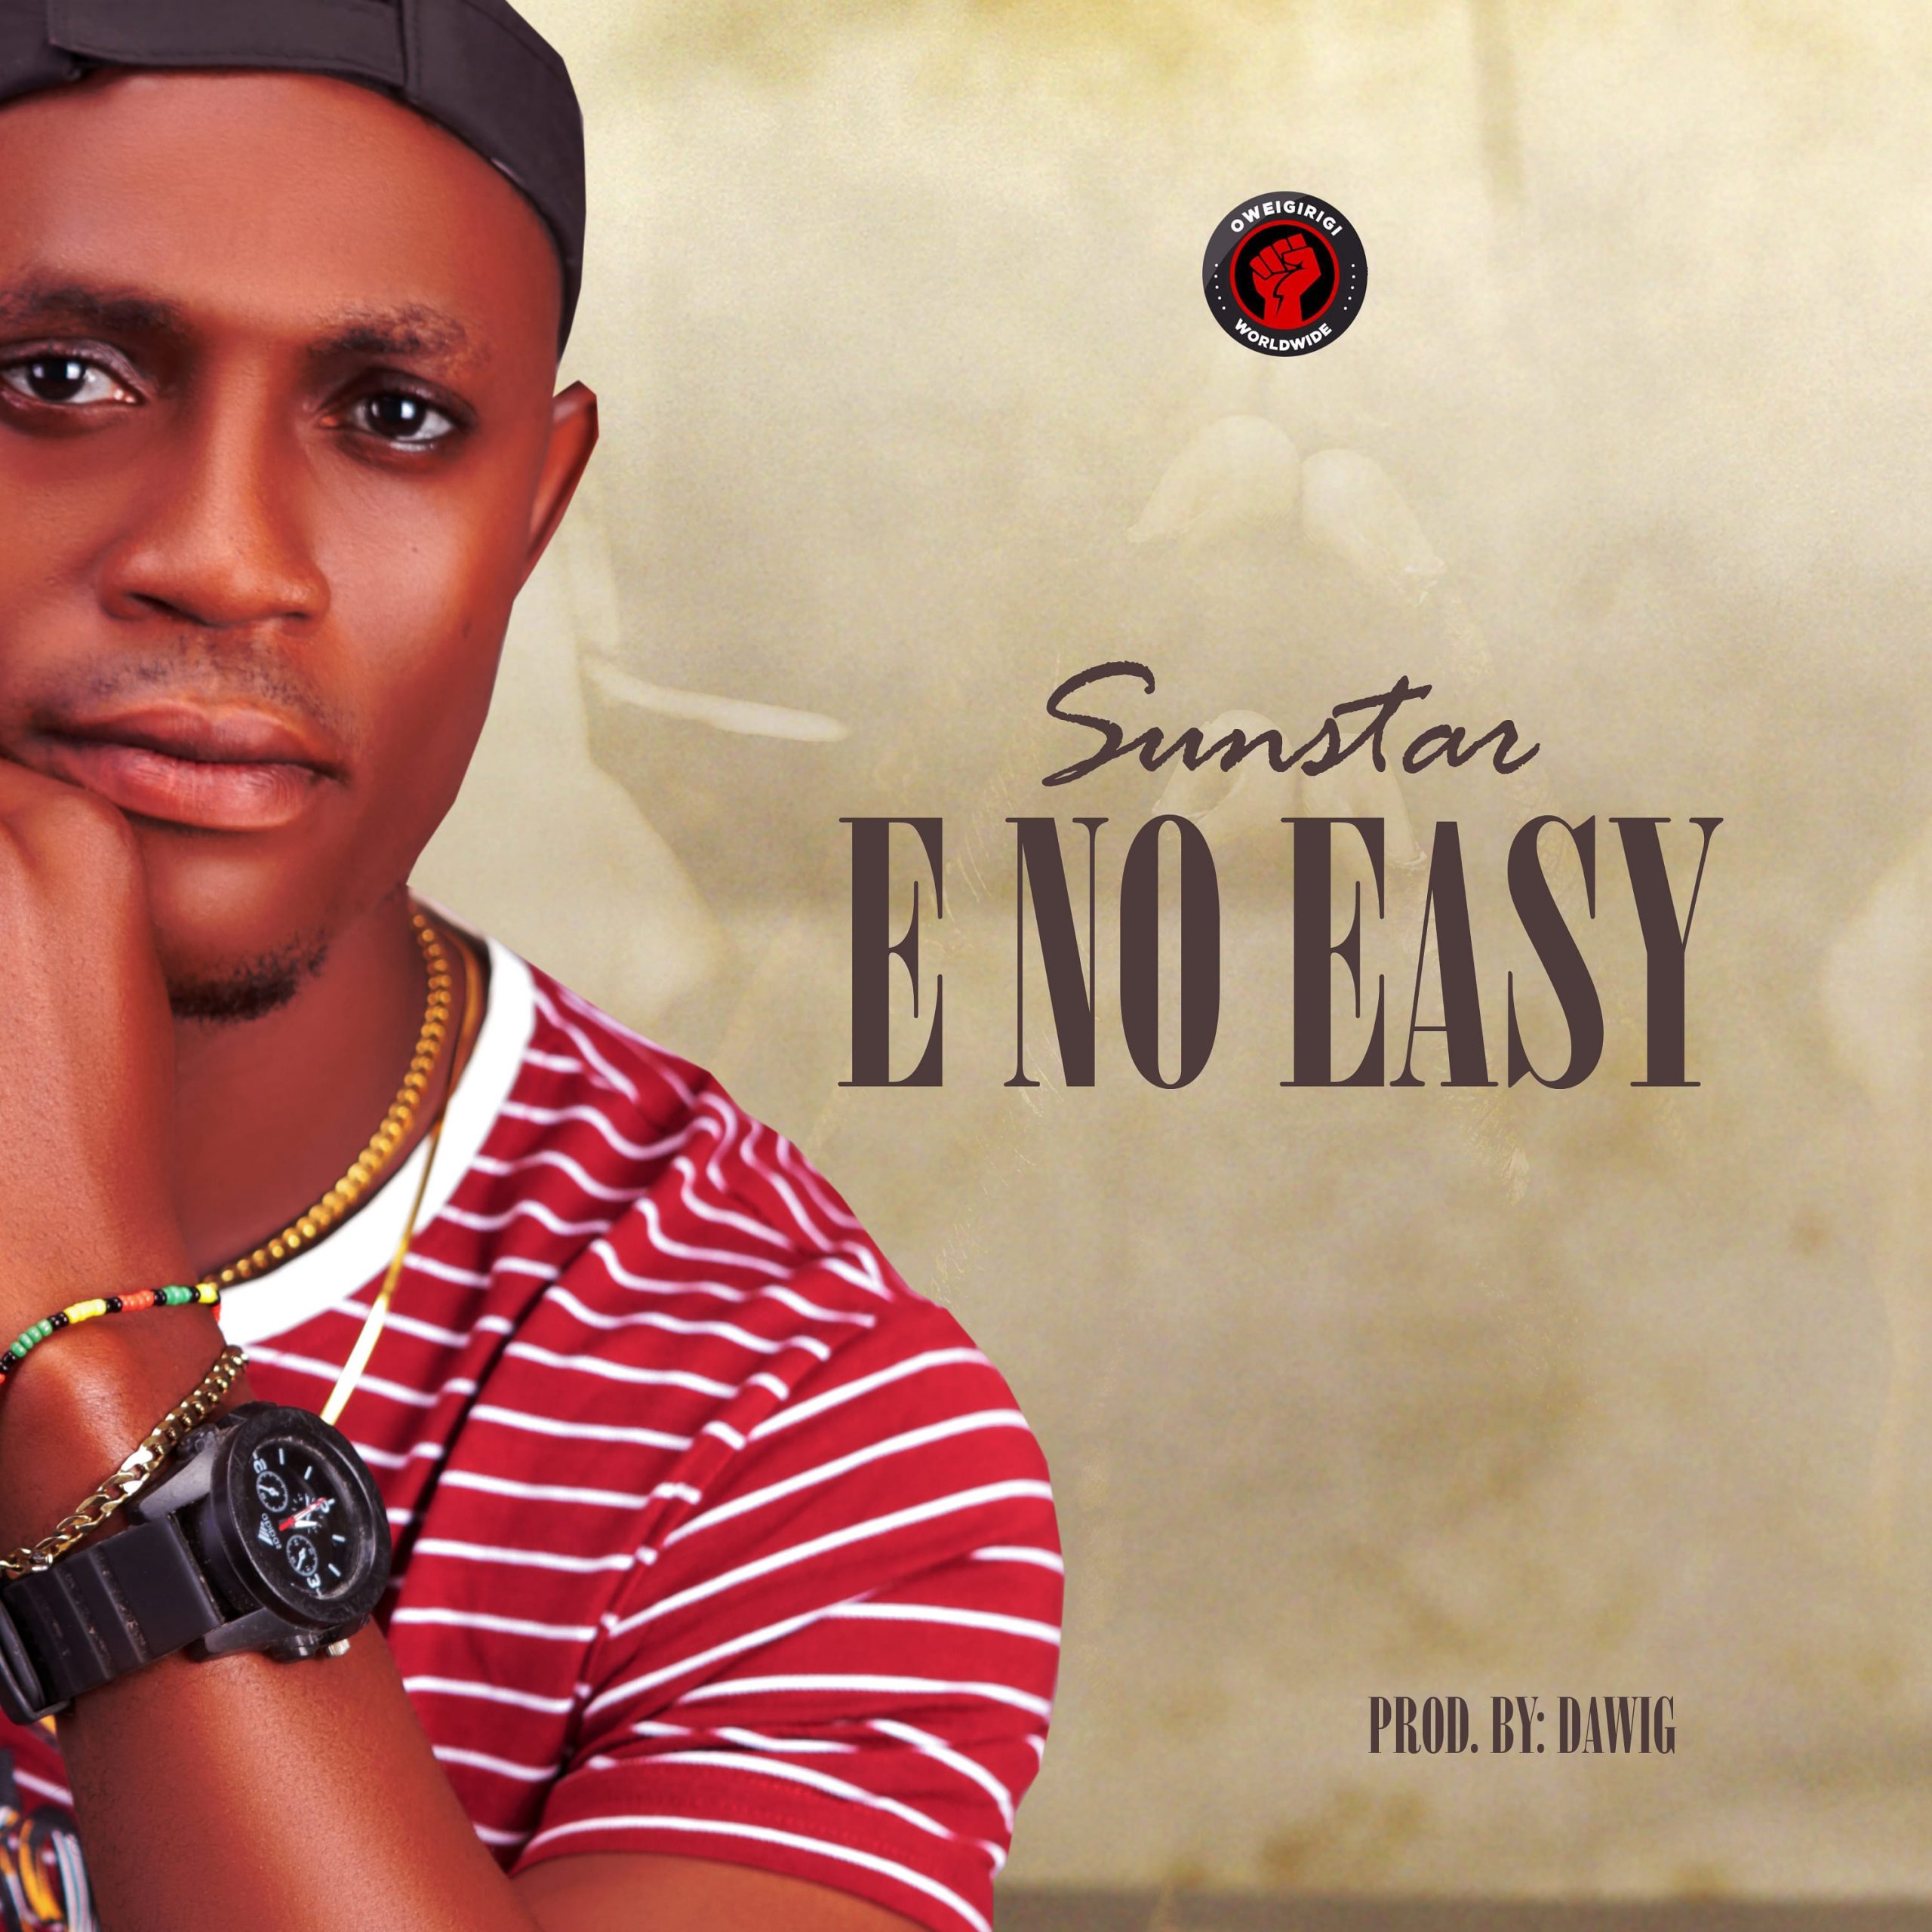 Sunstar -"E No Easy" (prod. Dawig) 3